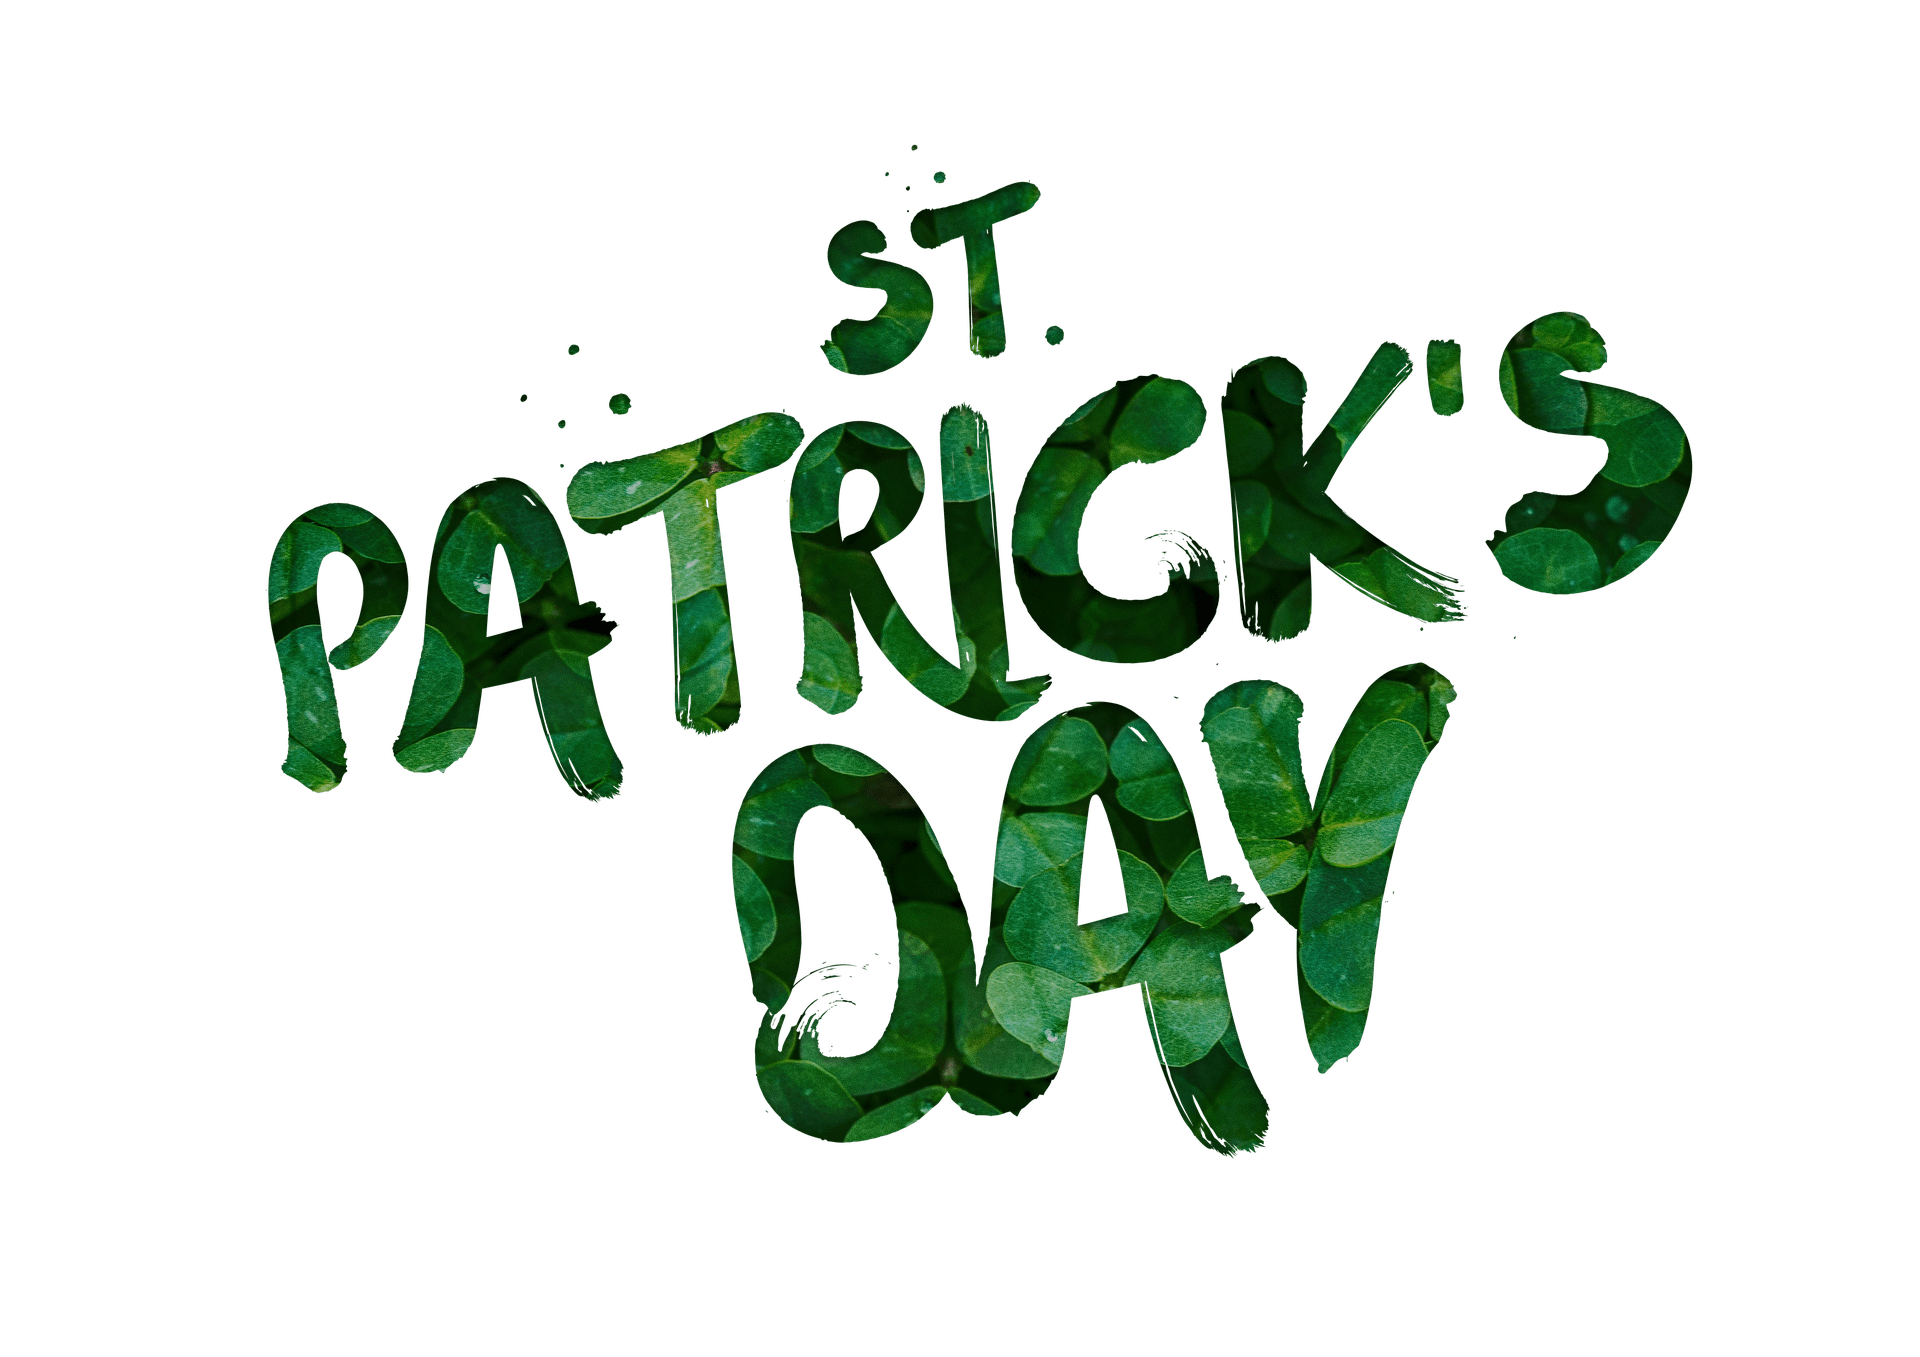 St. Patrick's Day Celebration